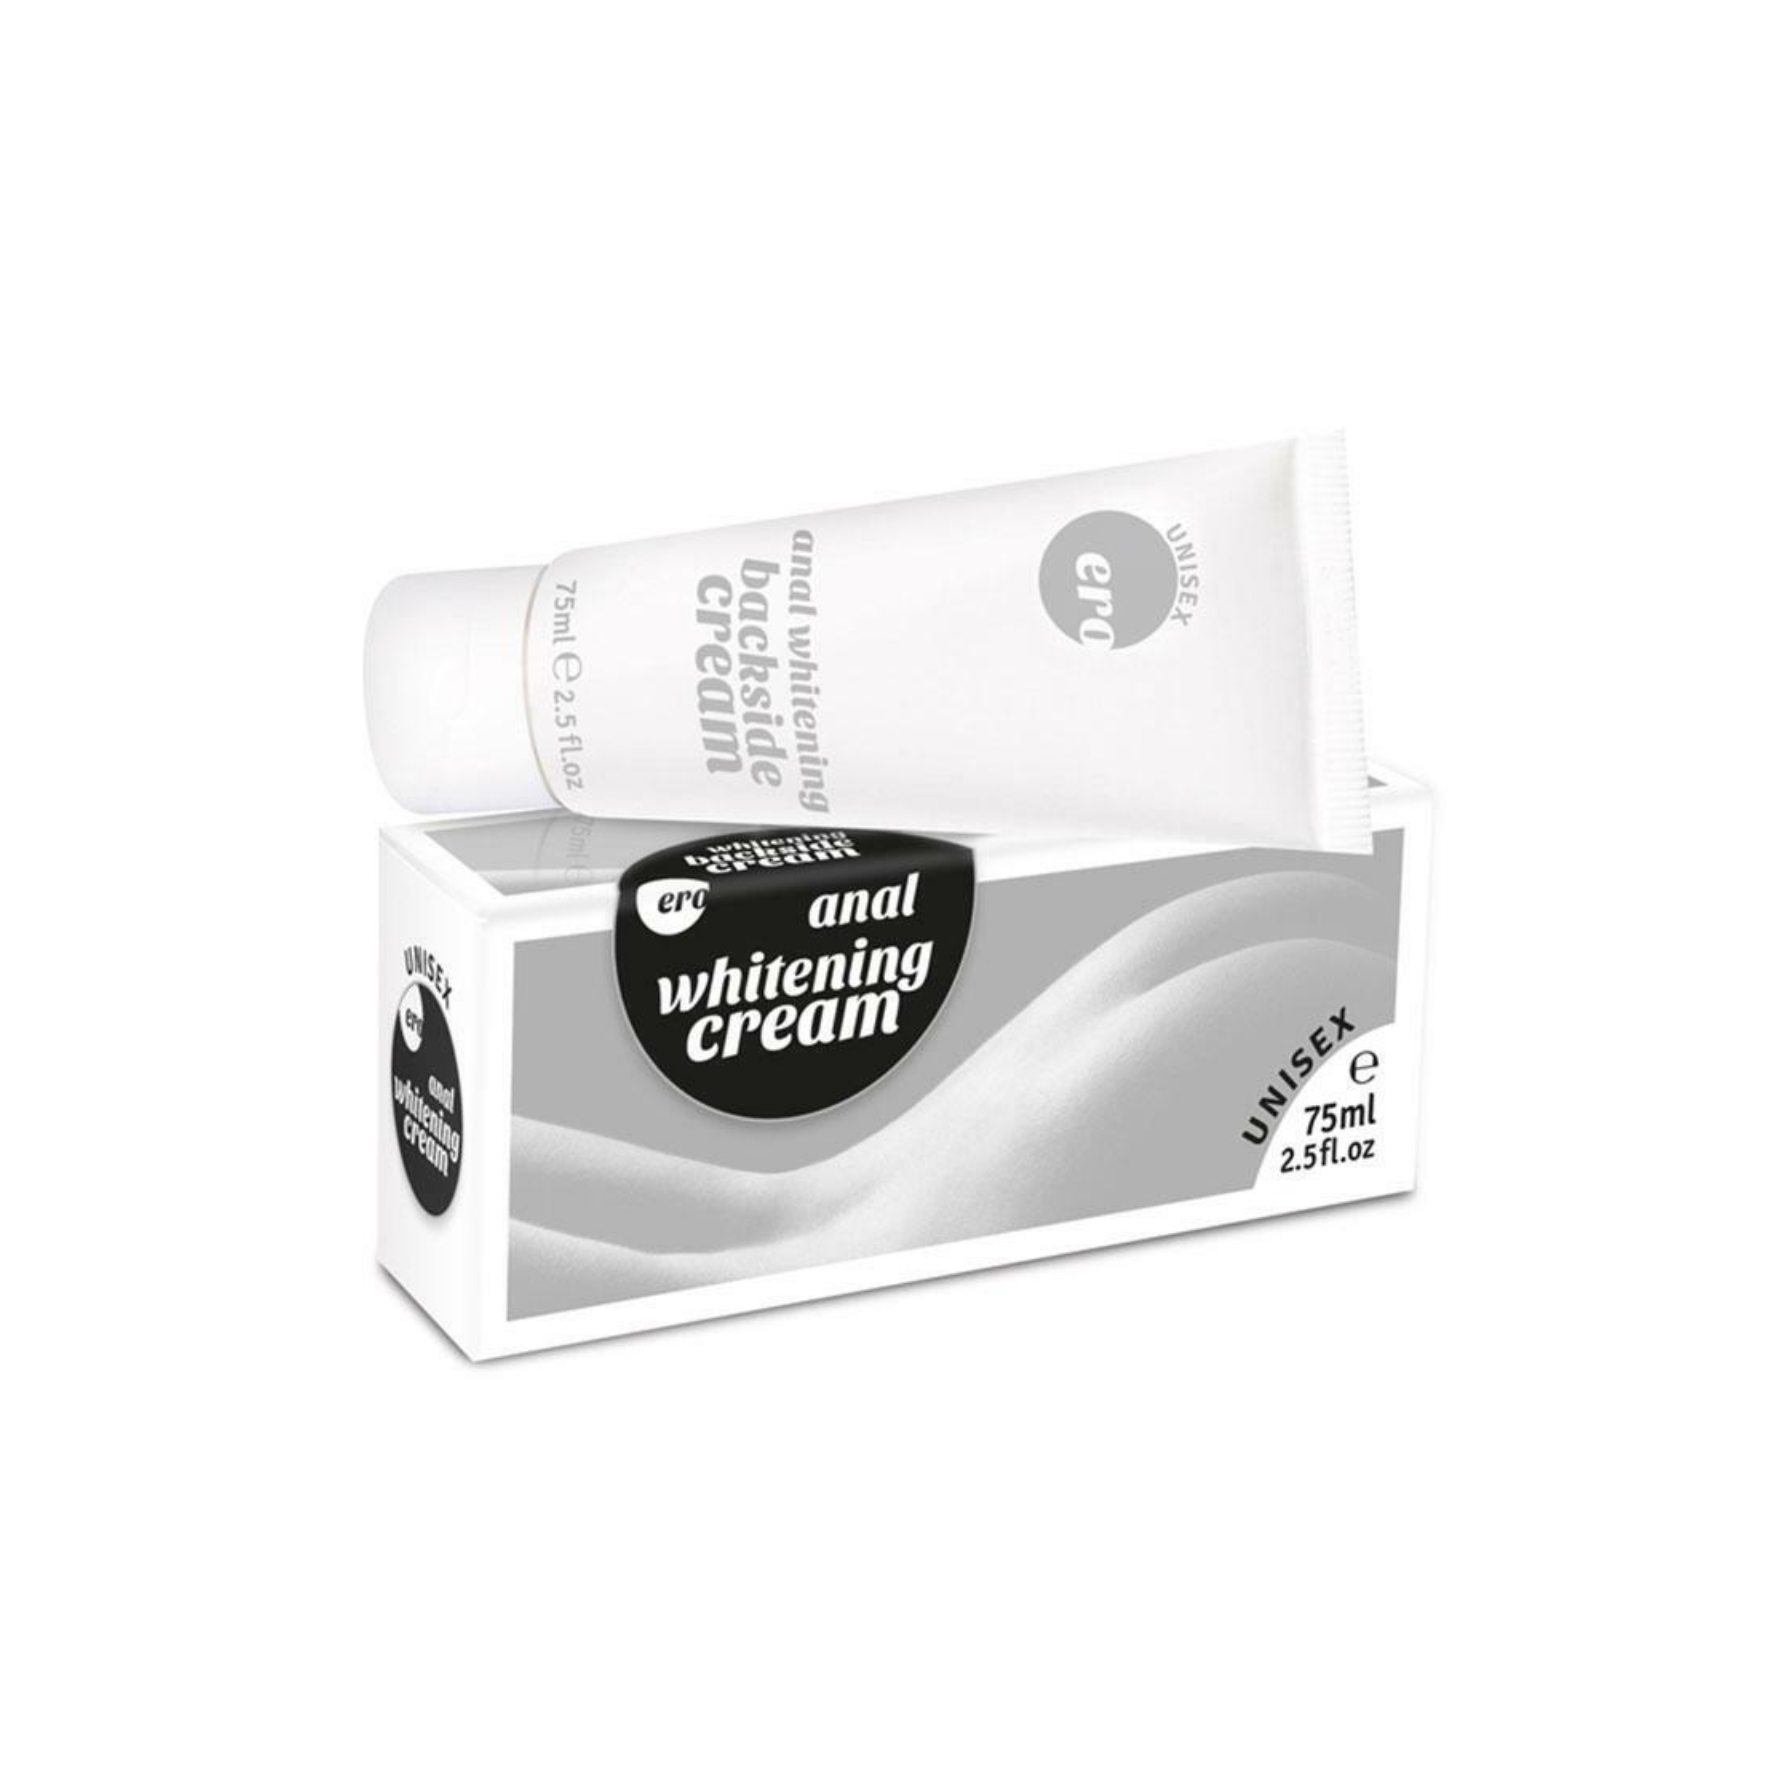 Išangę balinantis kremas “HOT Anal Backside Whitening Cream” - 75 ml